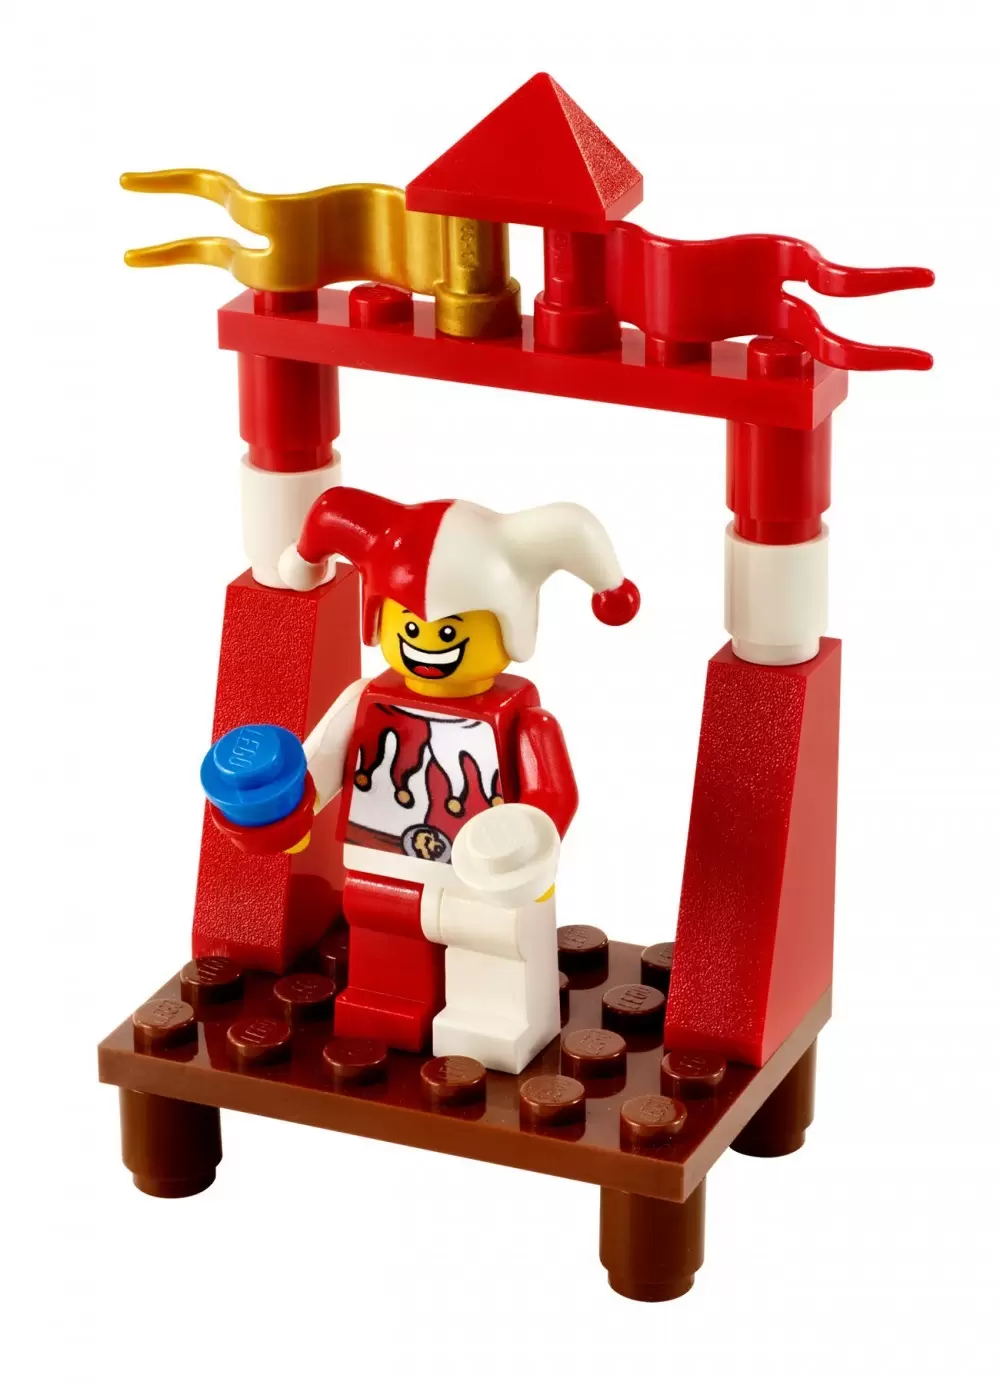 LEGO Kingdoms - Court Jester